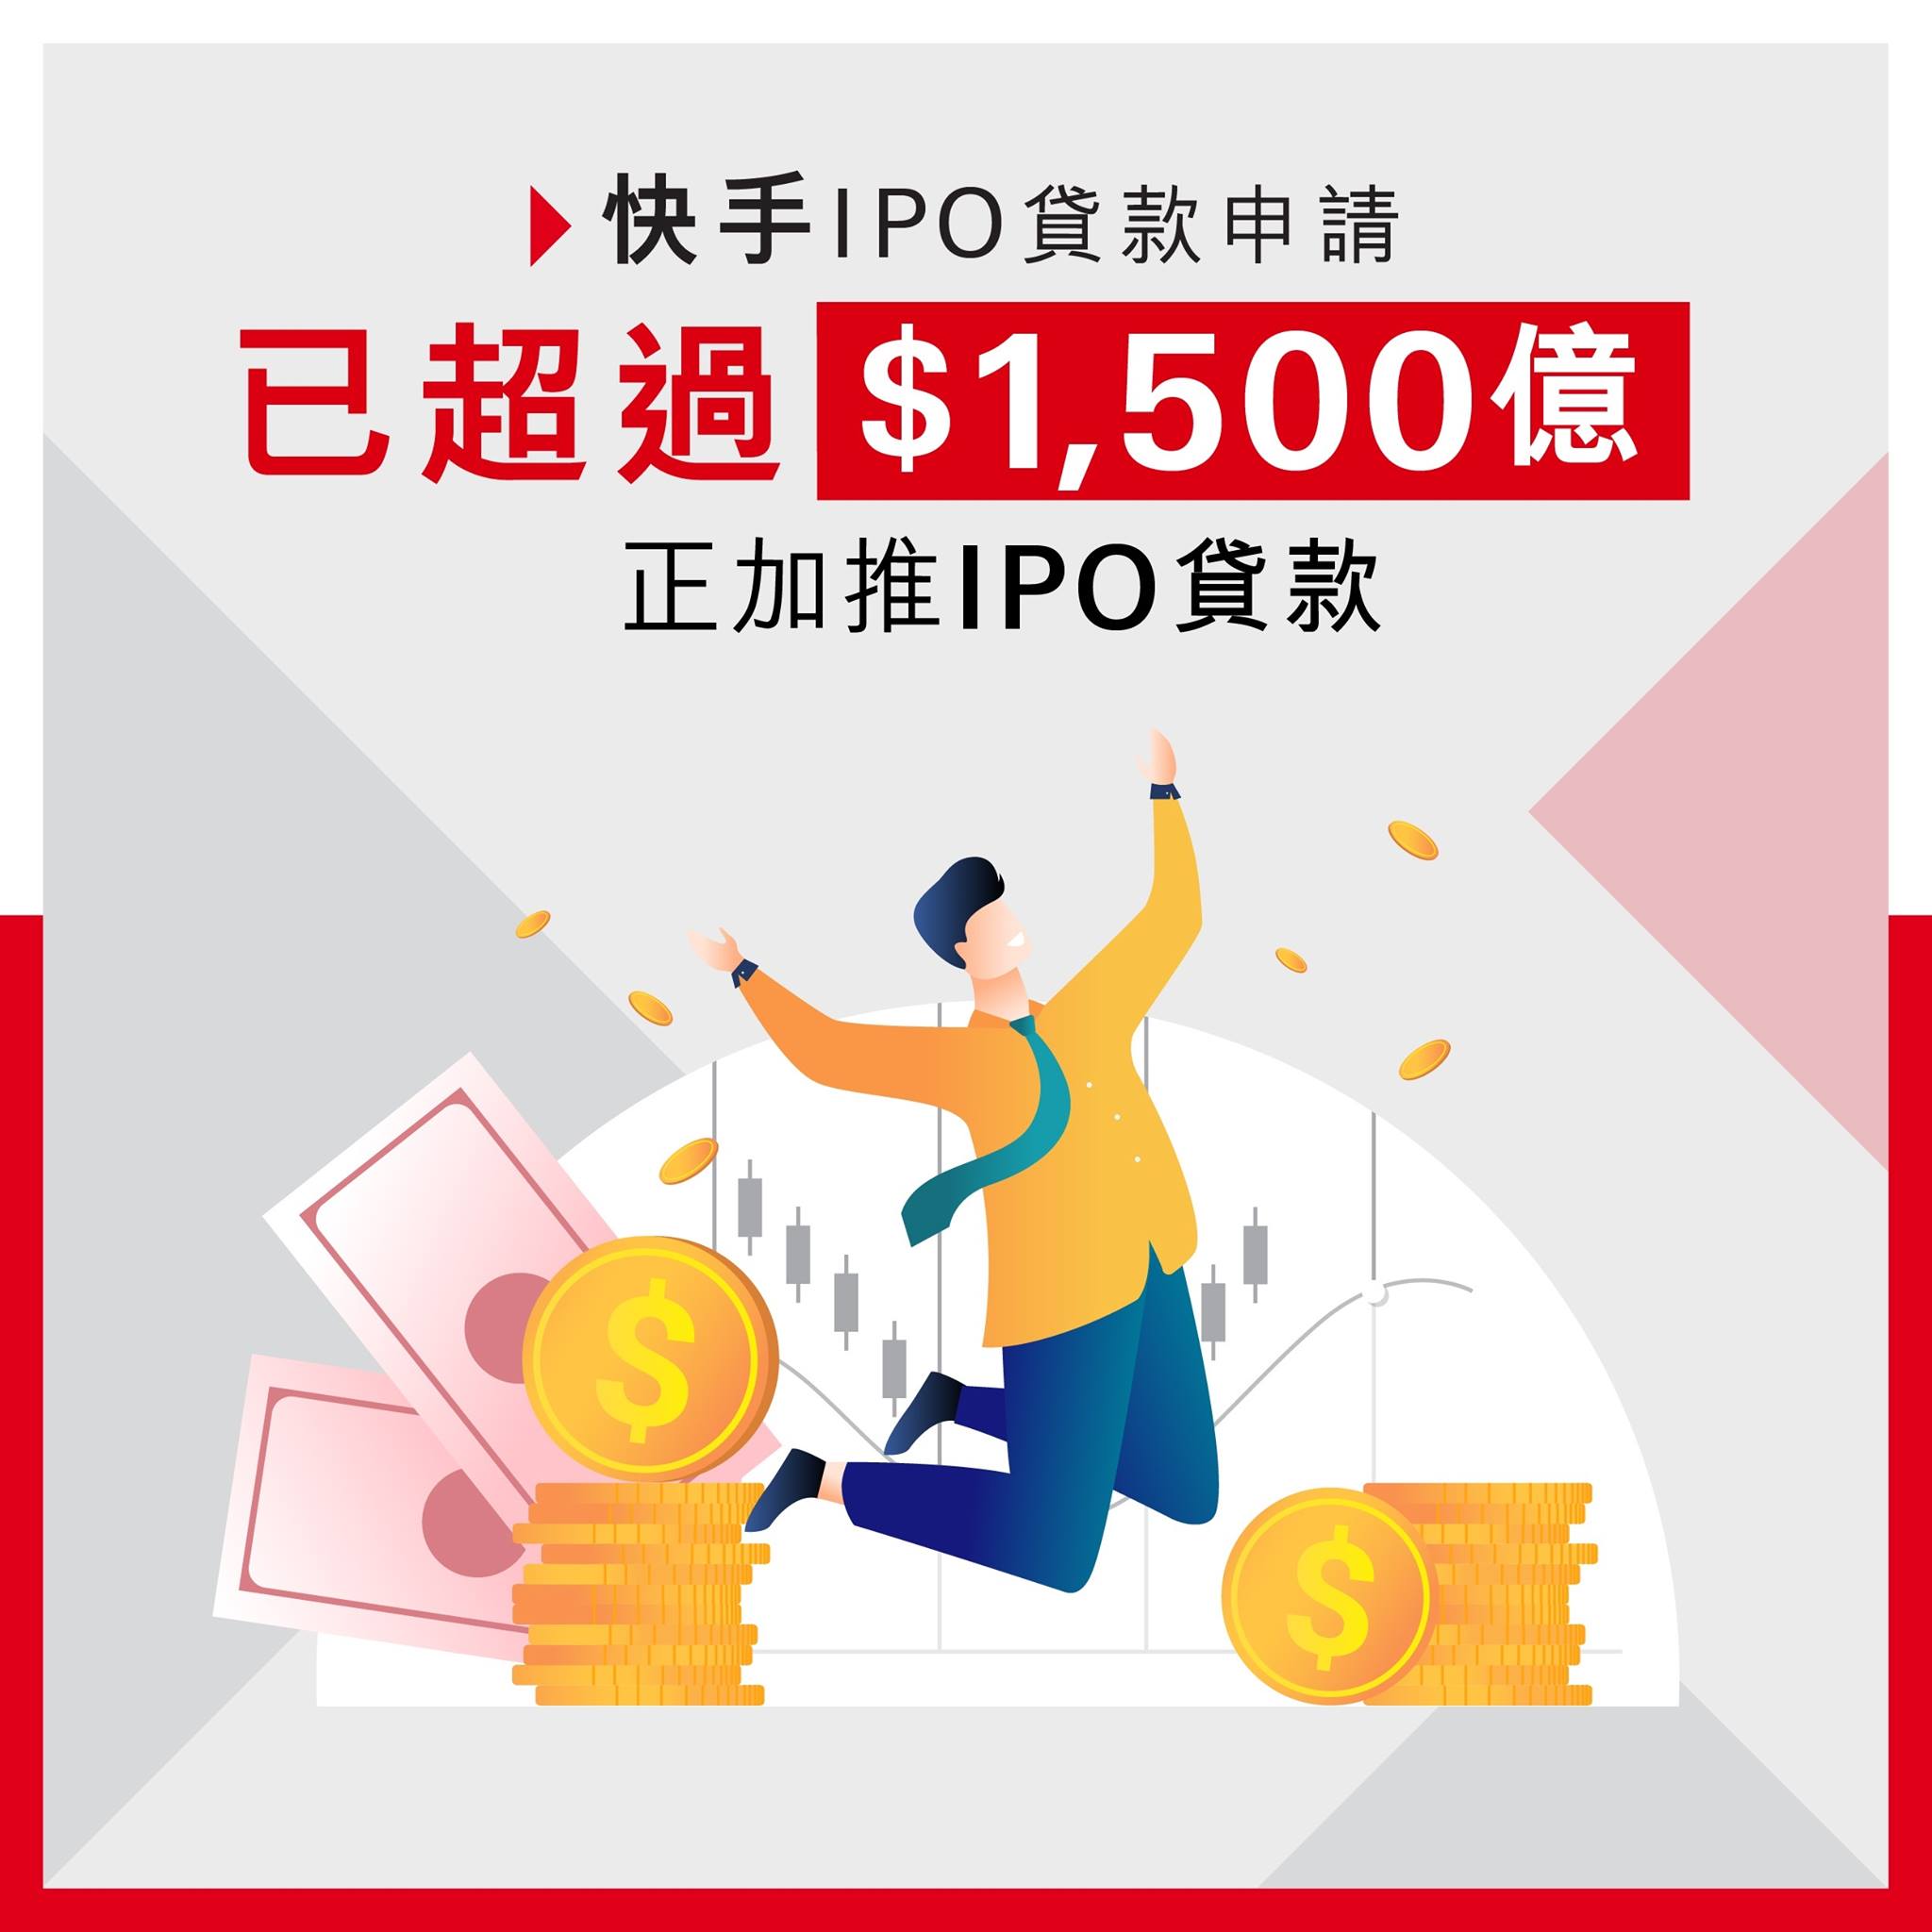 【感謝支持：快手IPO貸款申請已超過港幣1,500億元！】